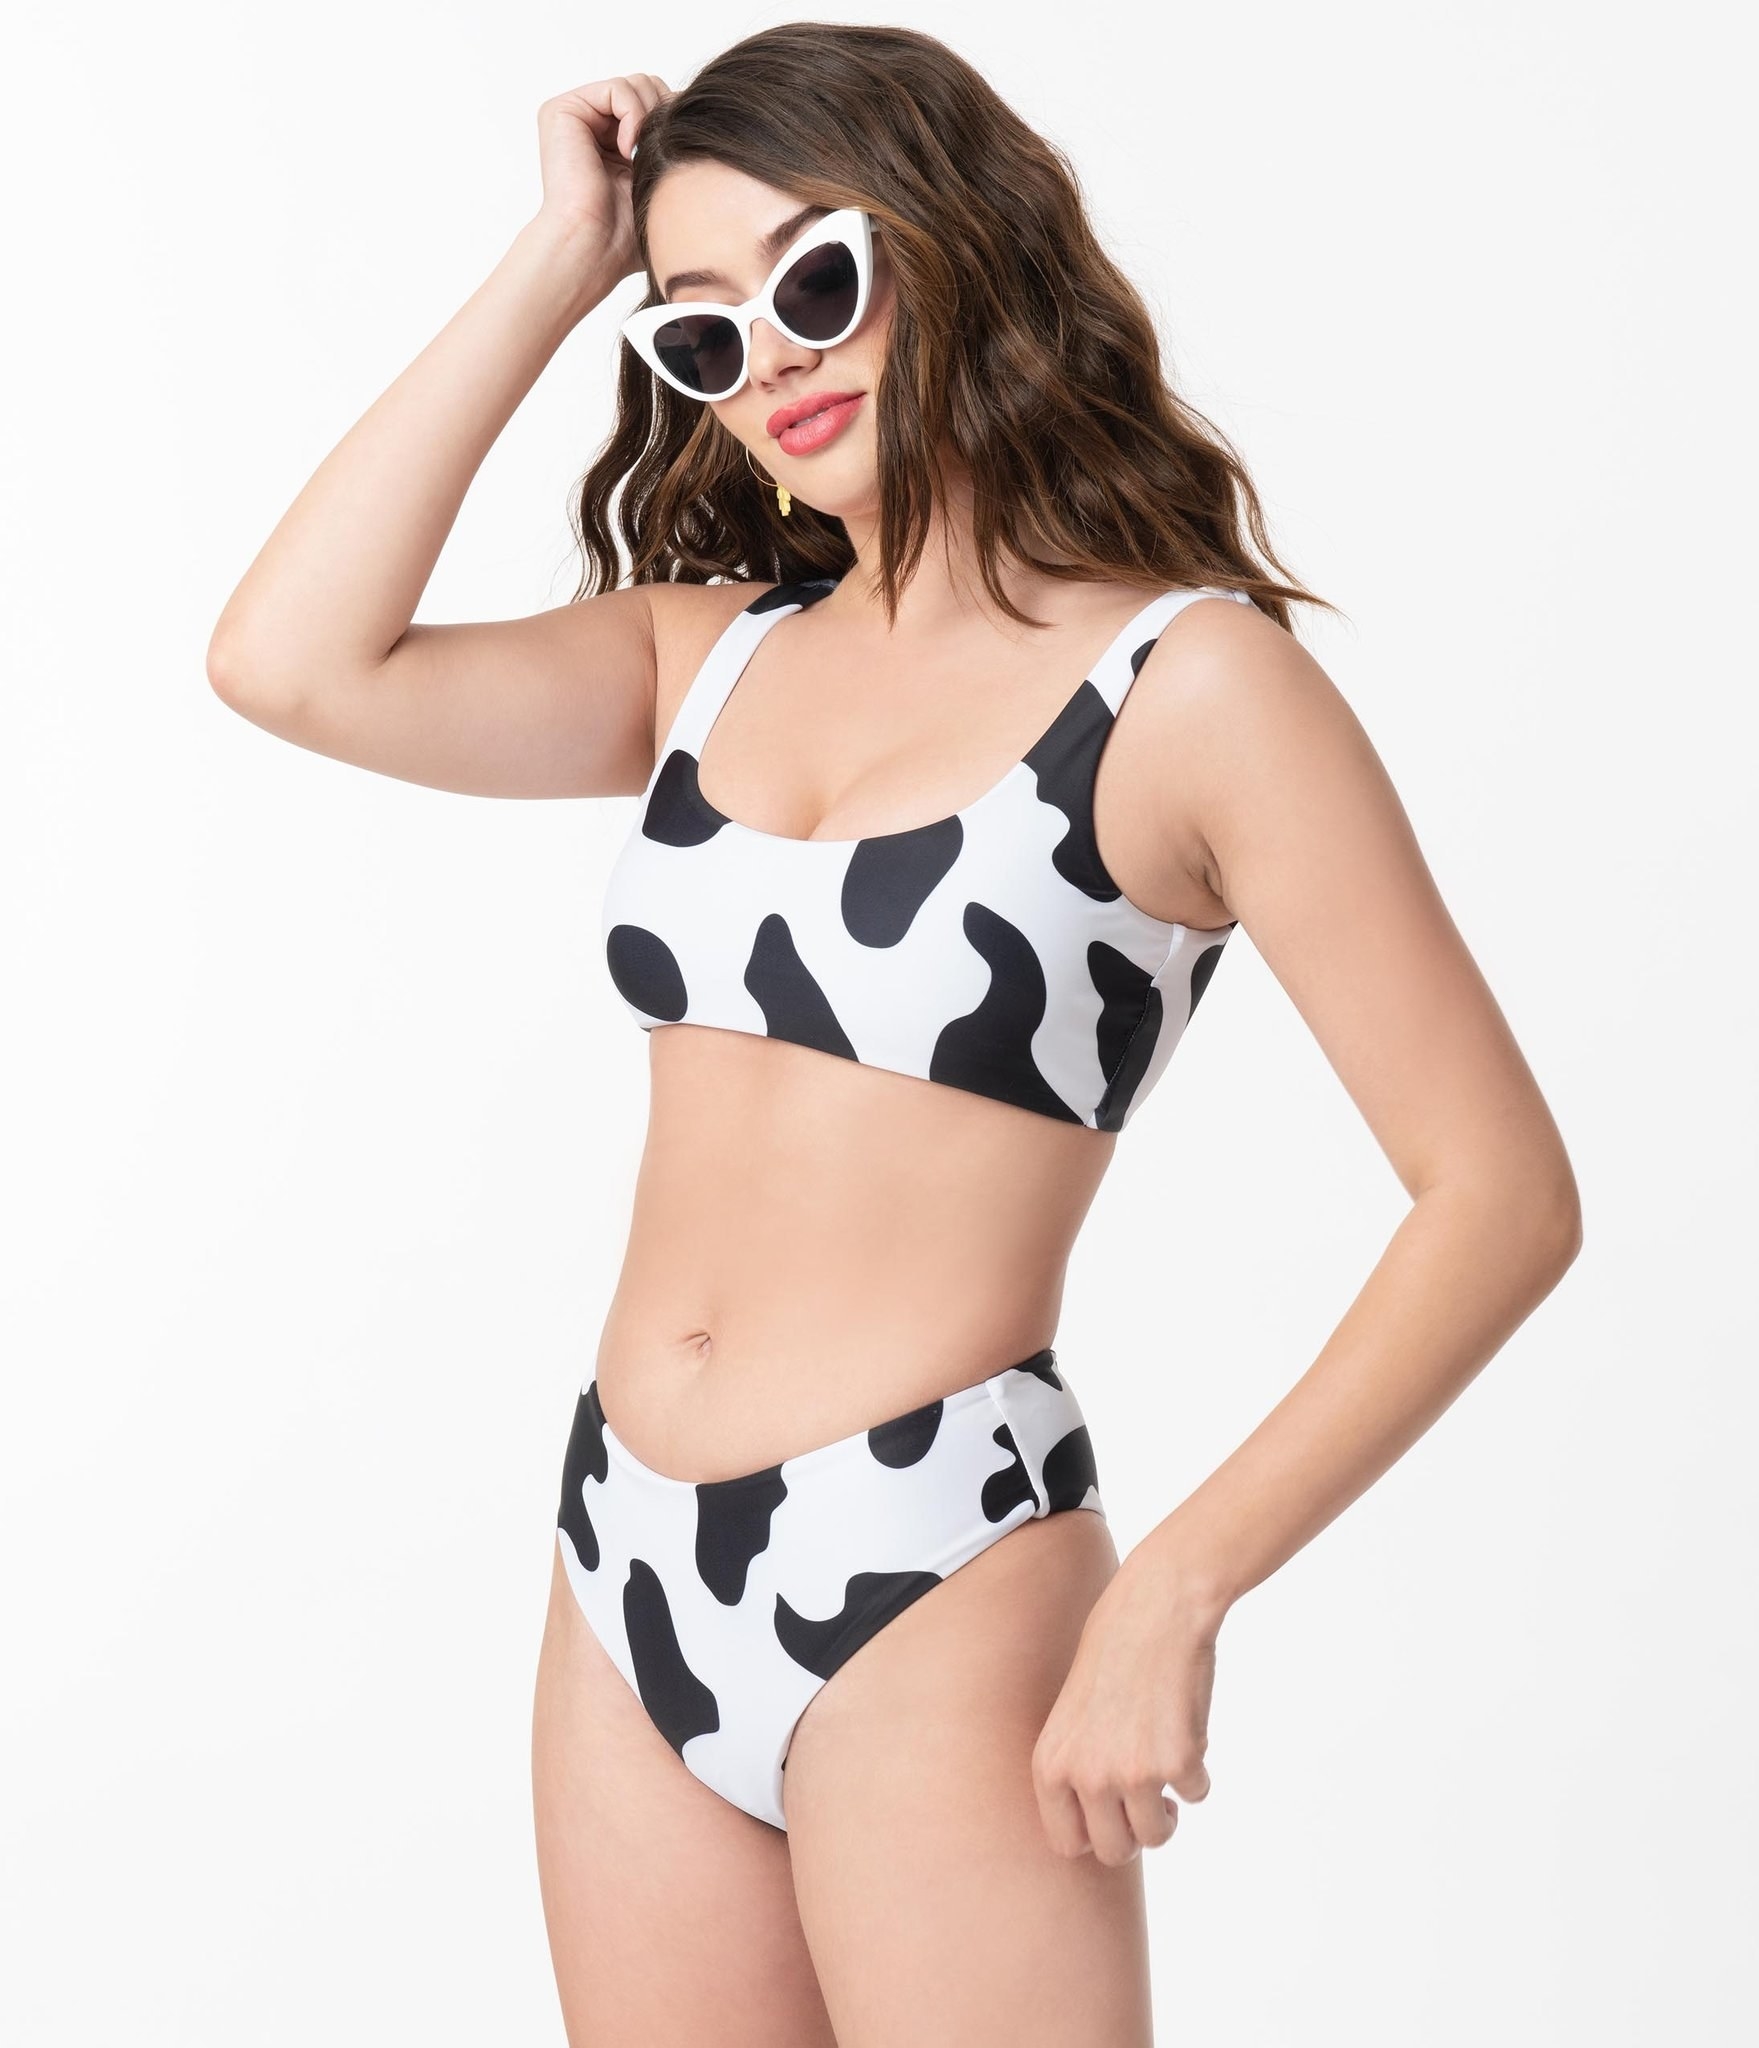 model in cow print bikini 